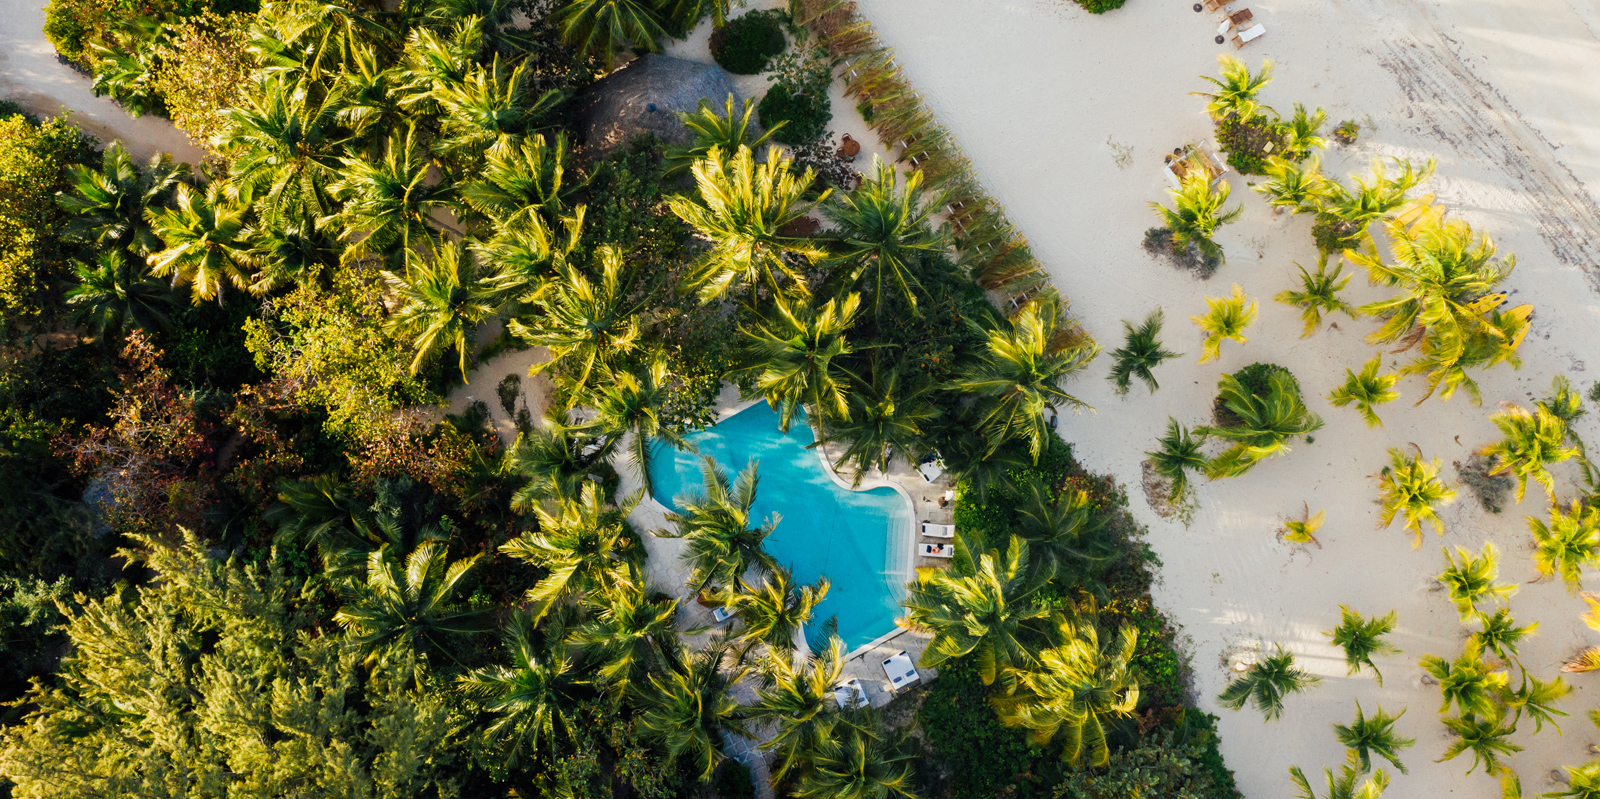 Pool near the beach in The Bahamas